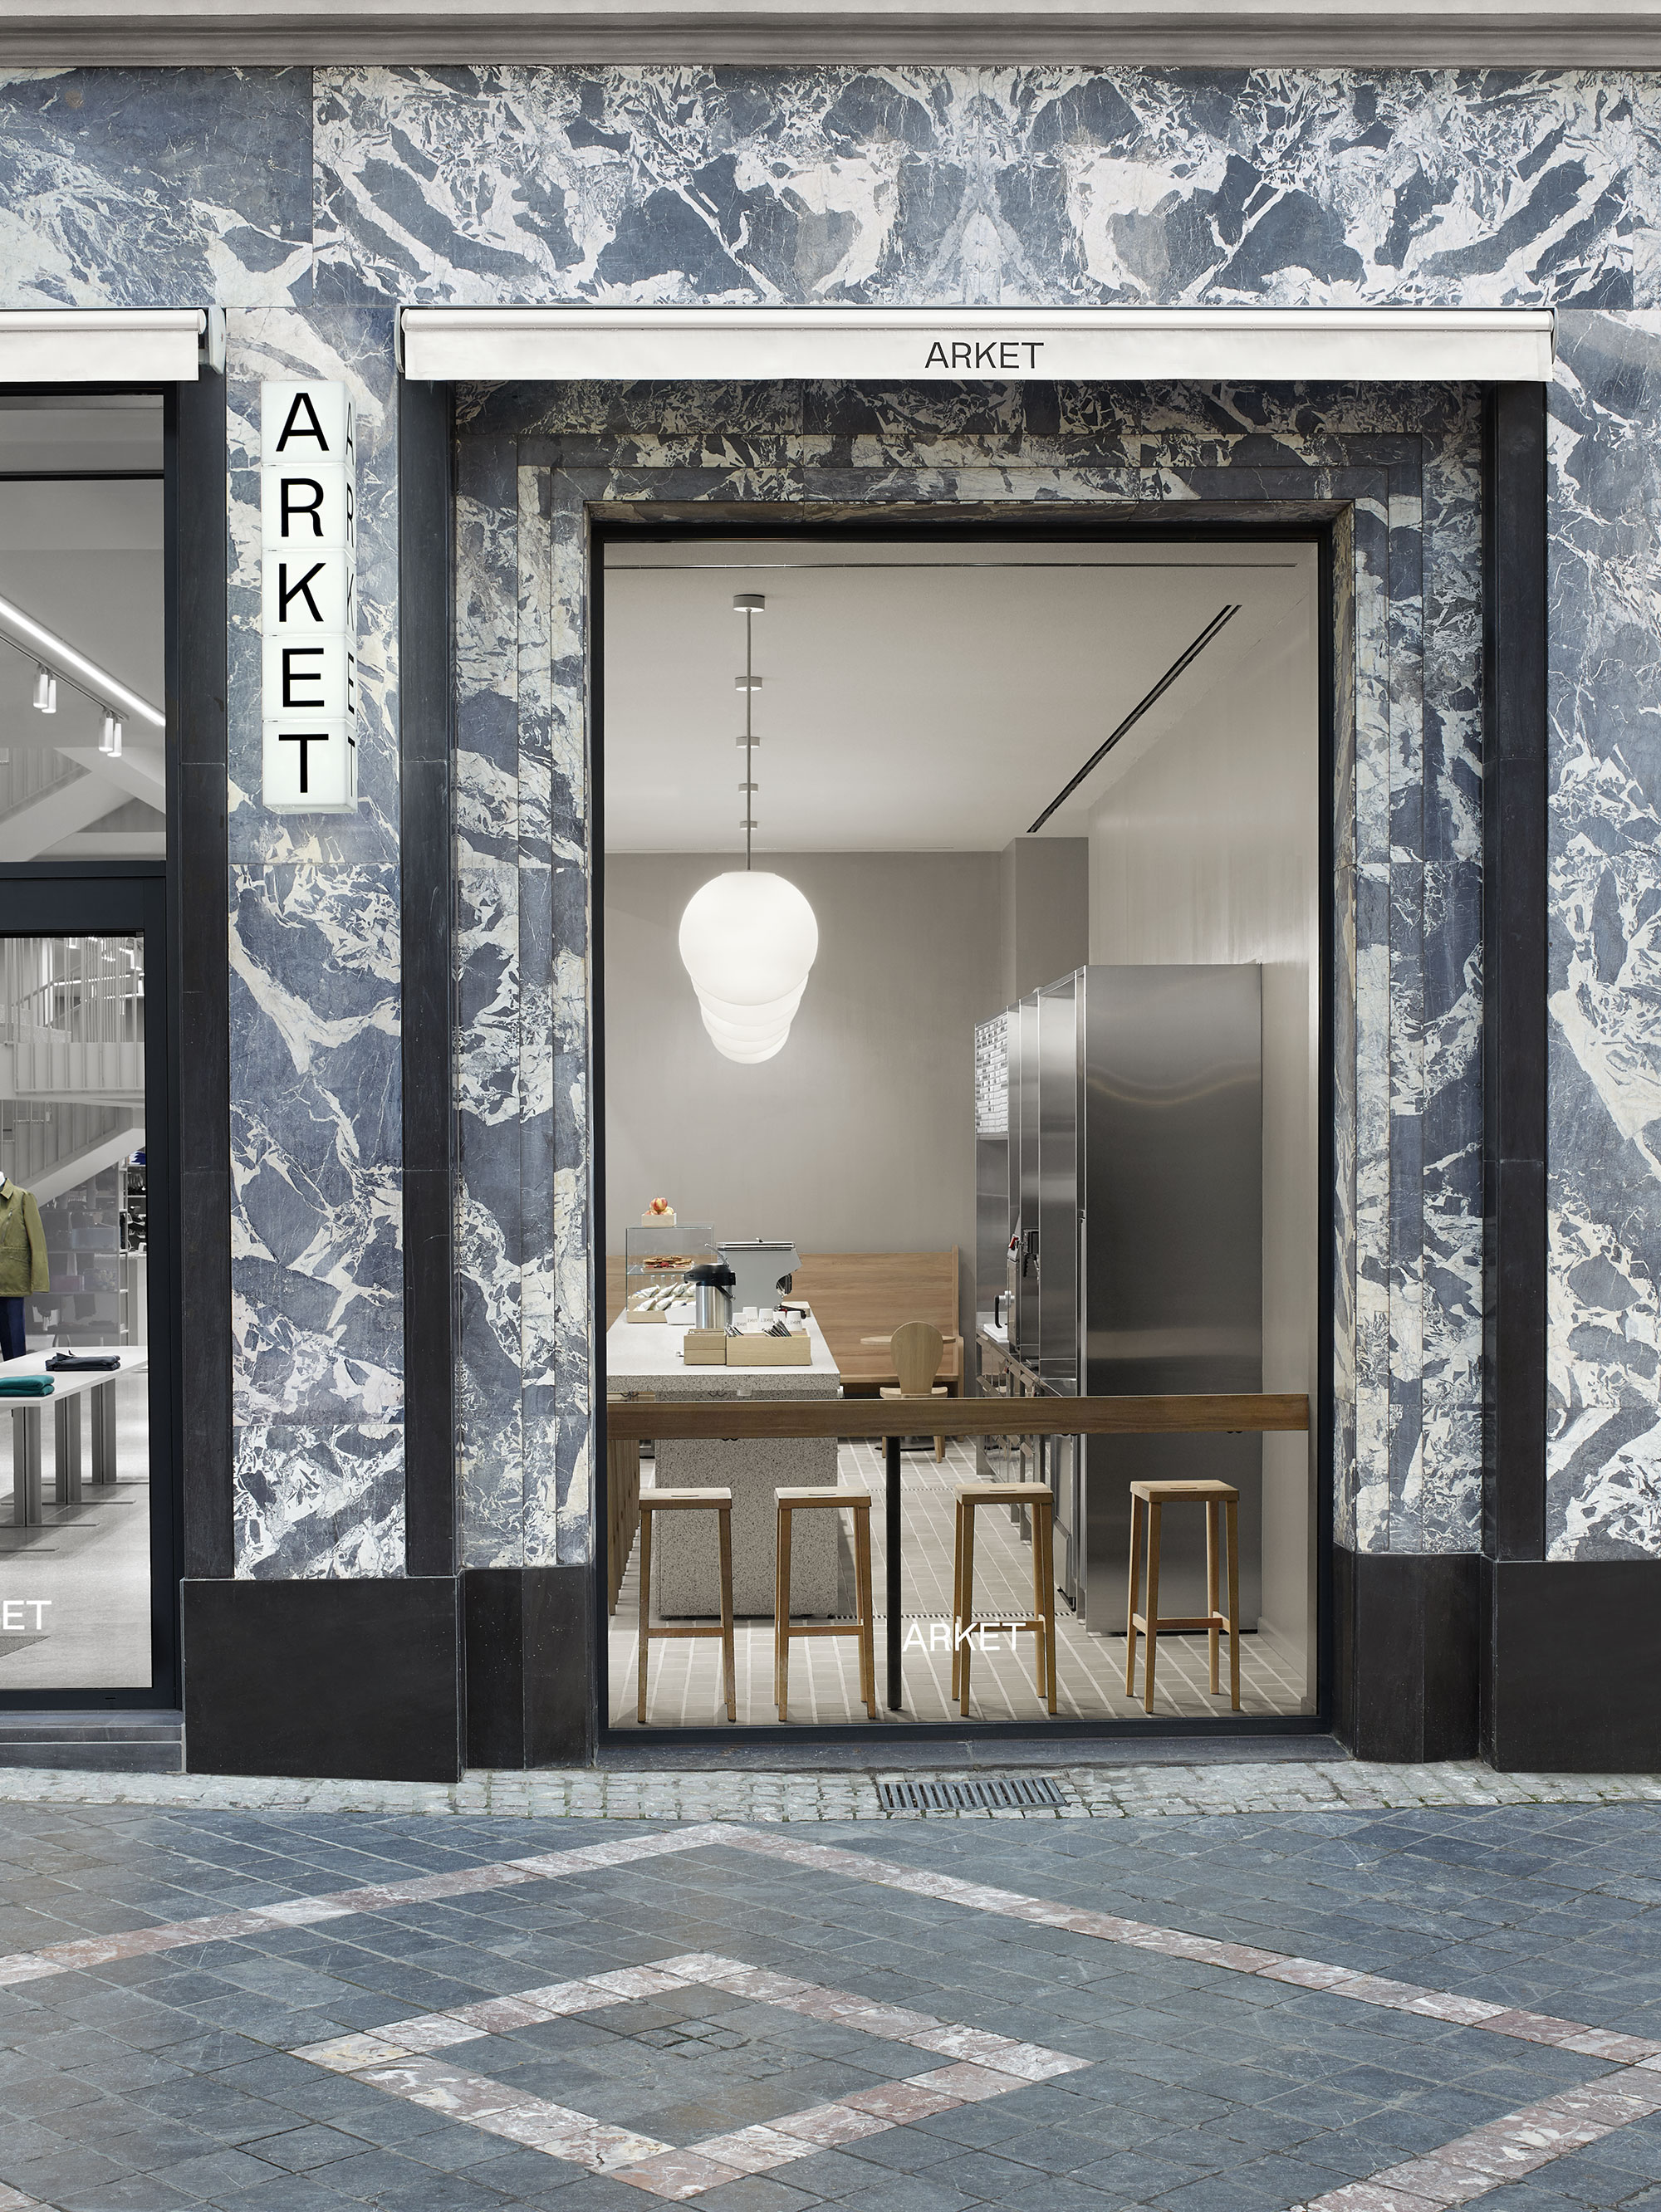 ARKET Café by Halleroed